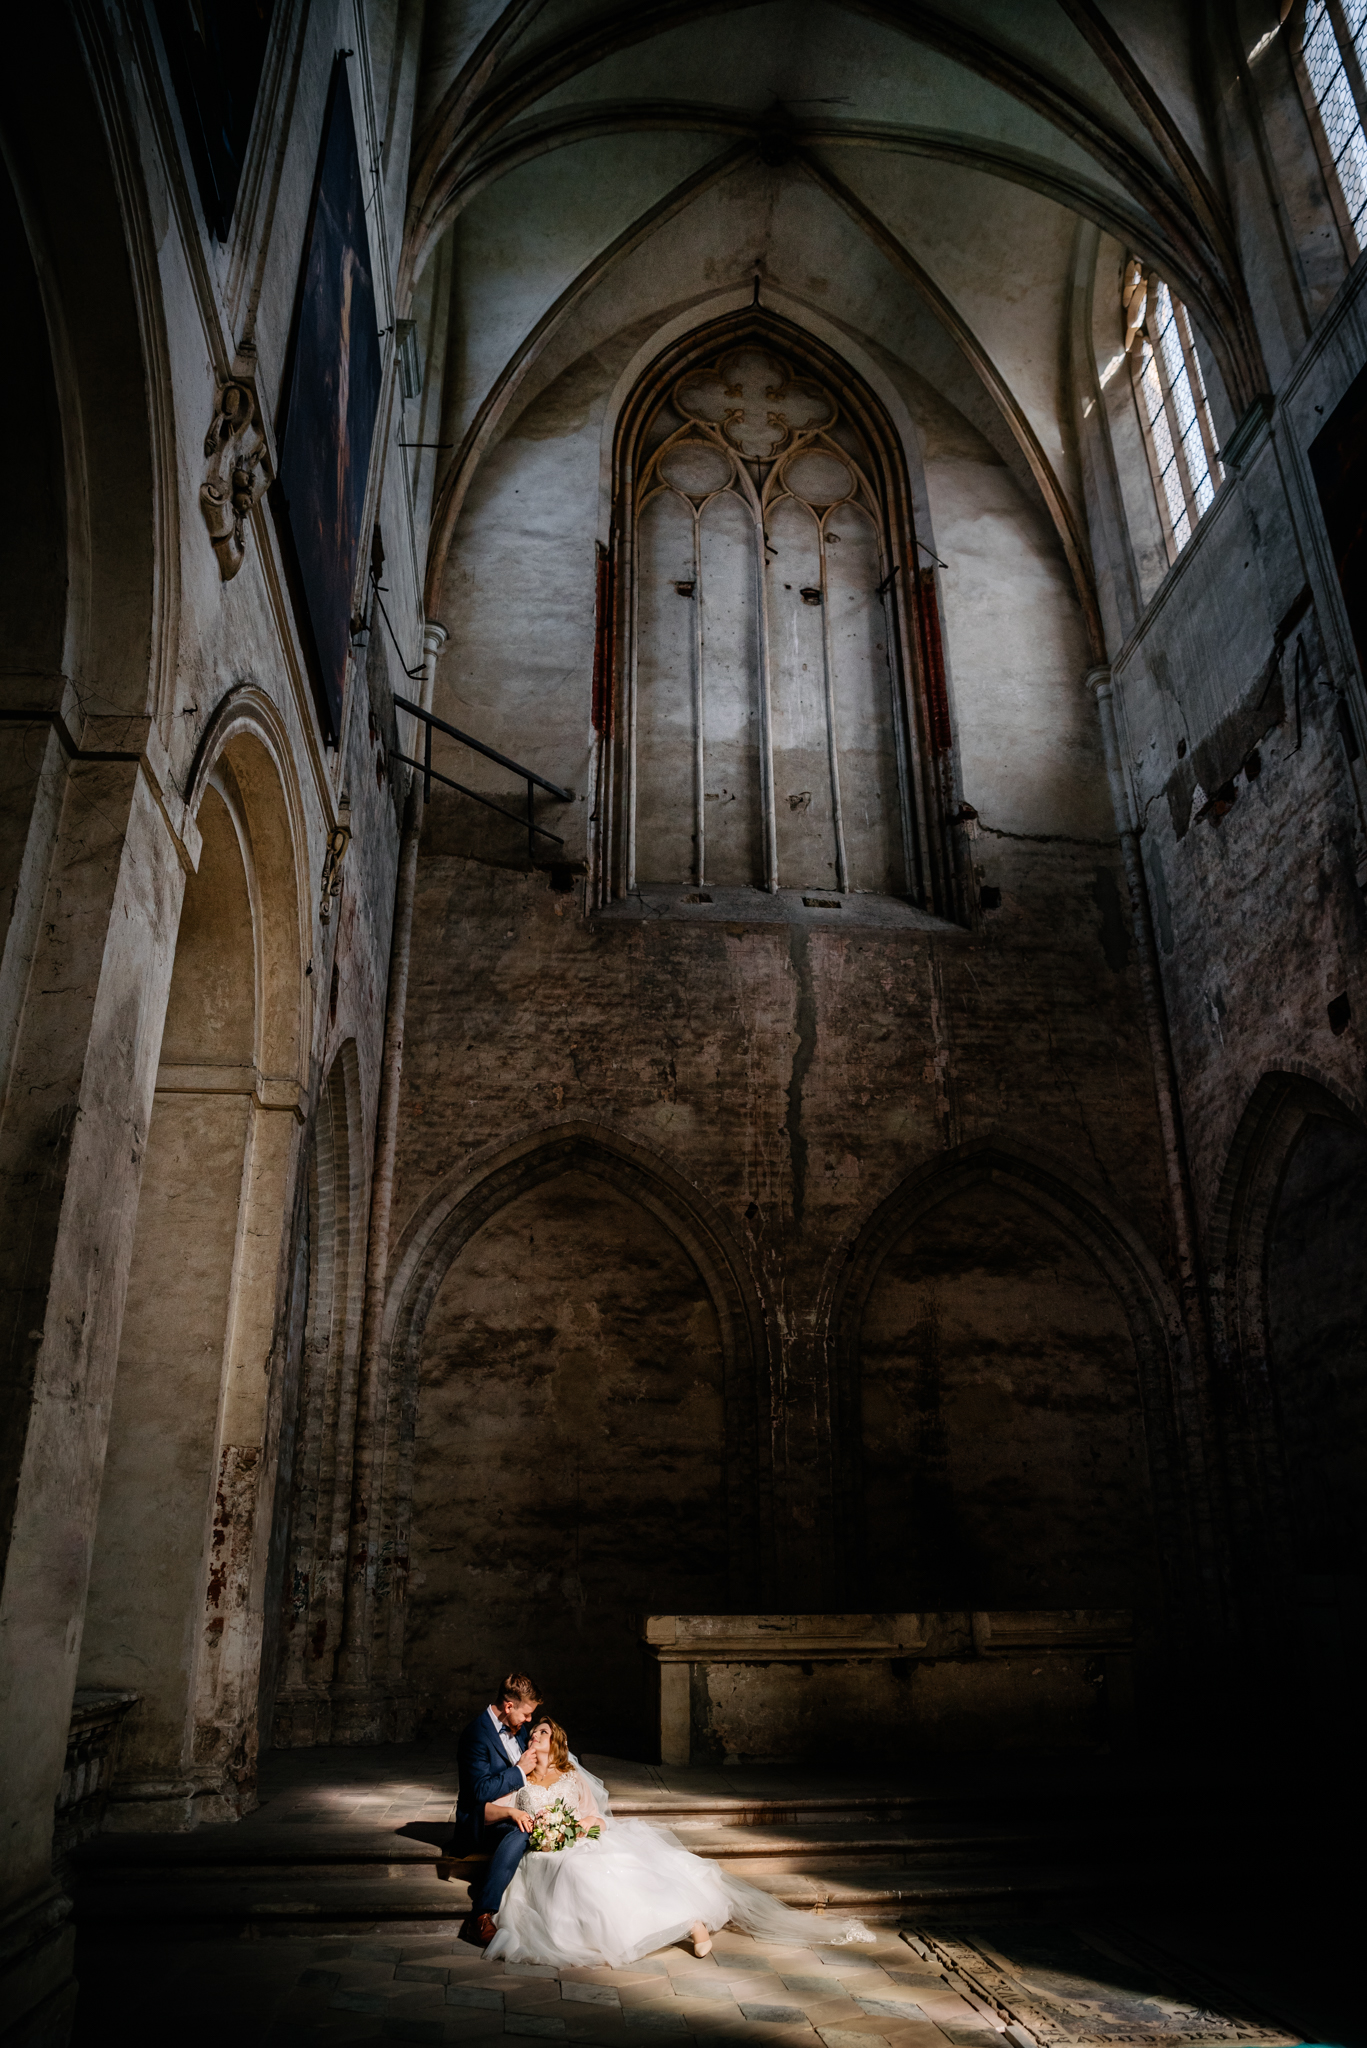 Kobieta i mężczyzna w ślubnych strojach siedzą na schodach w ciemnym gotyckim wnętrzu.